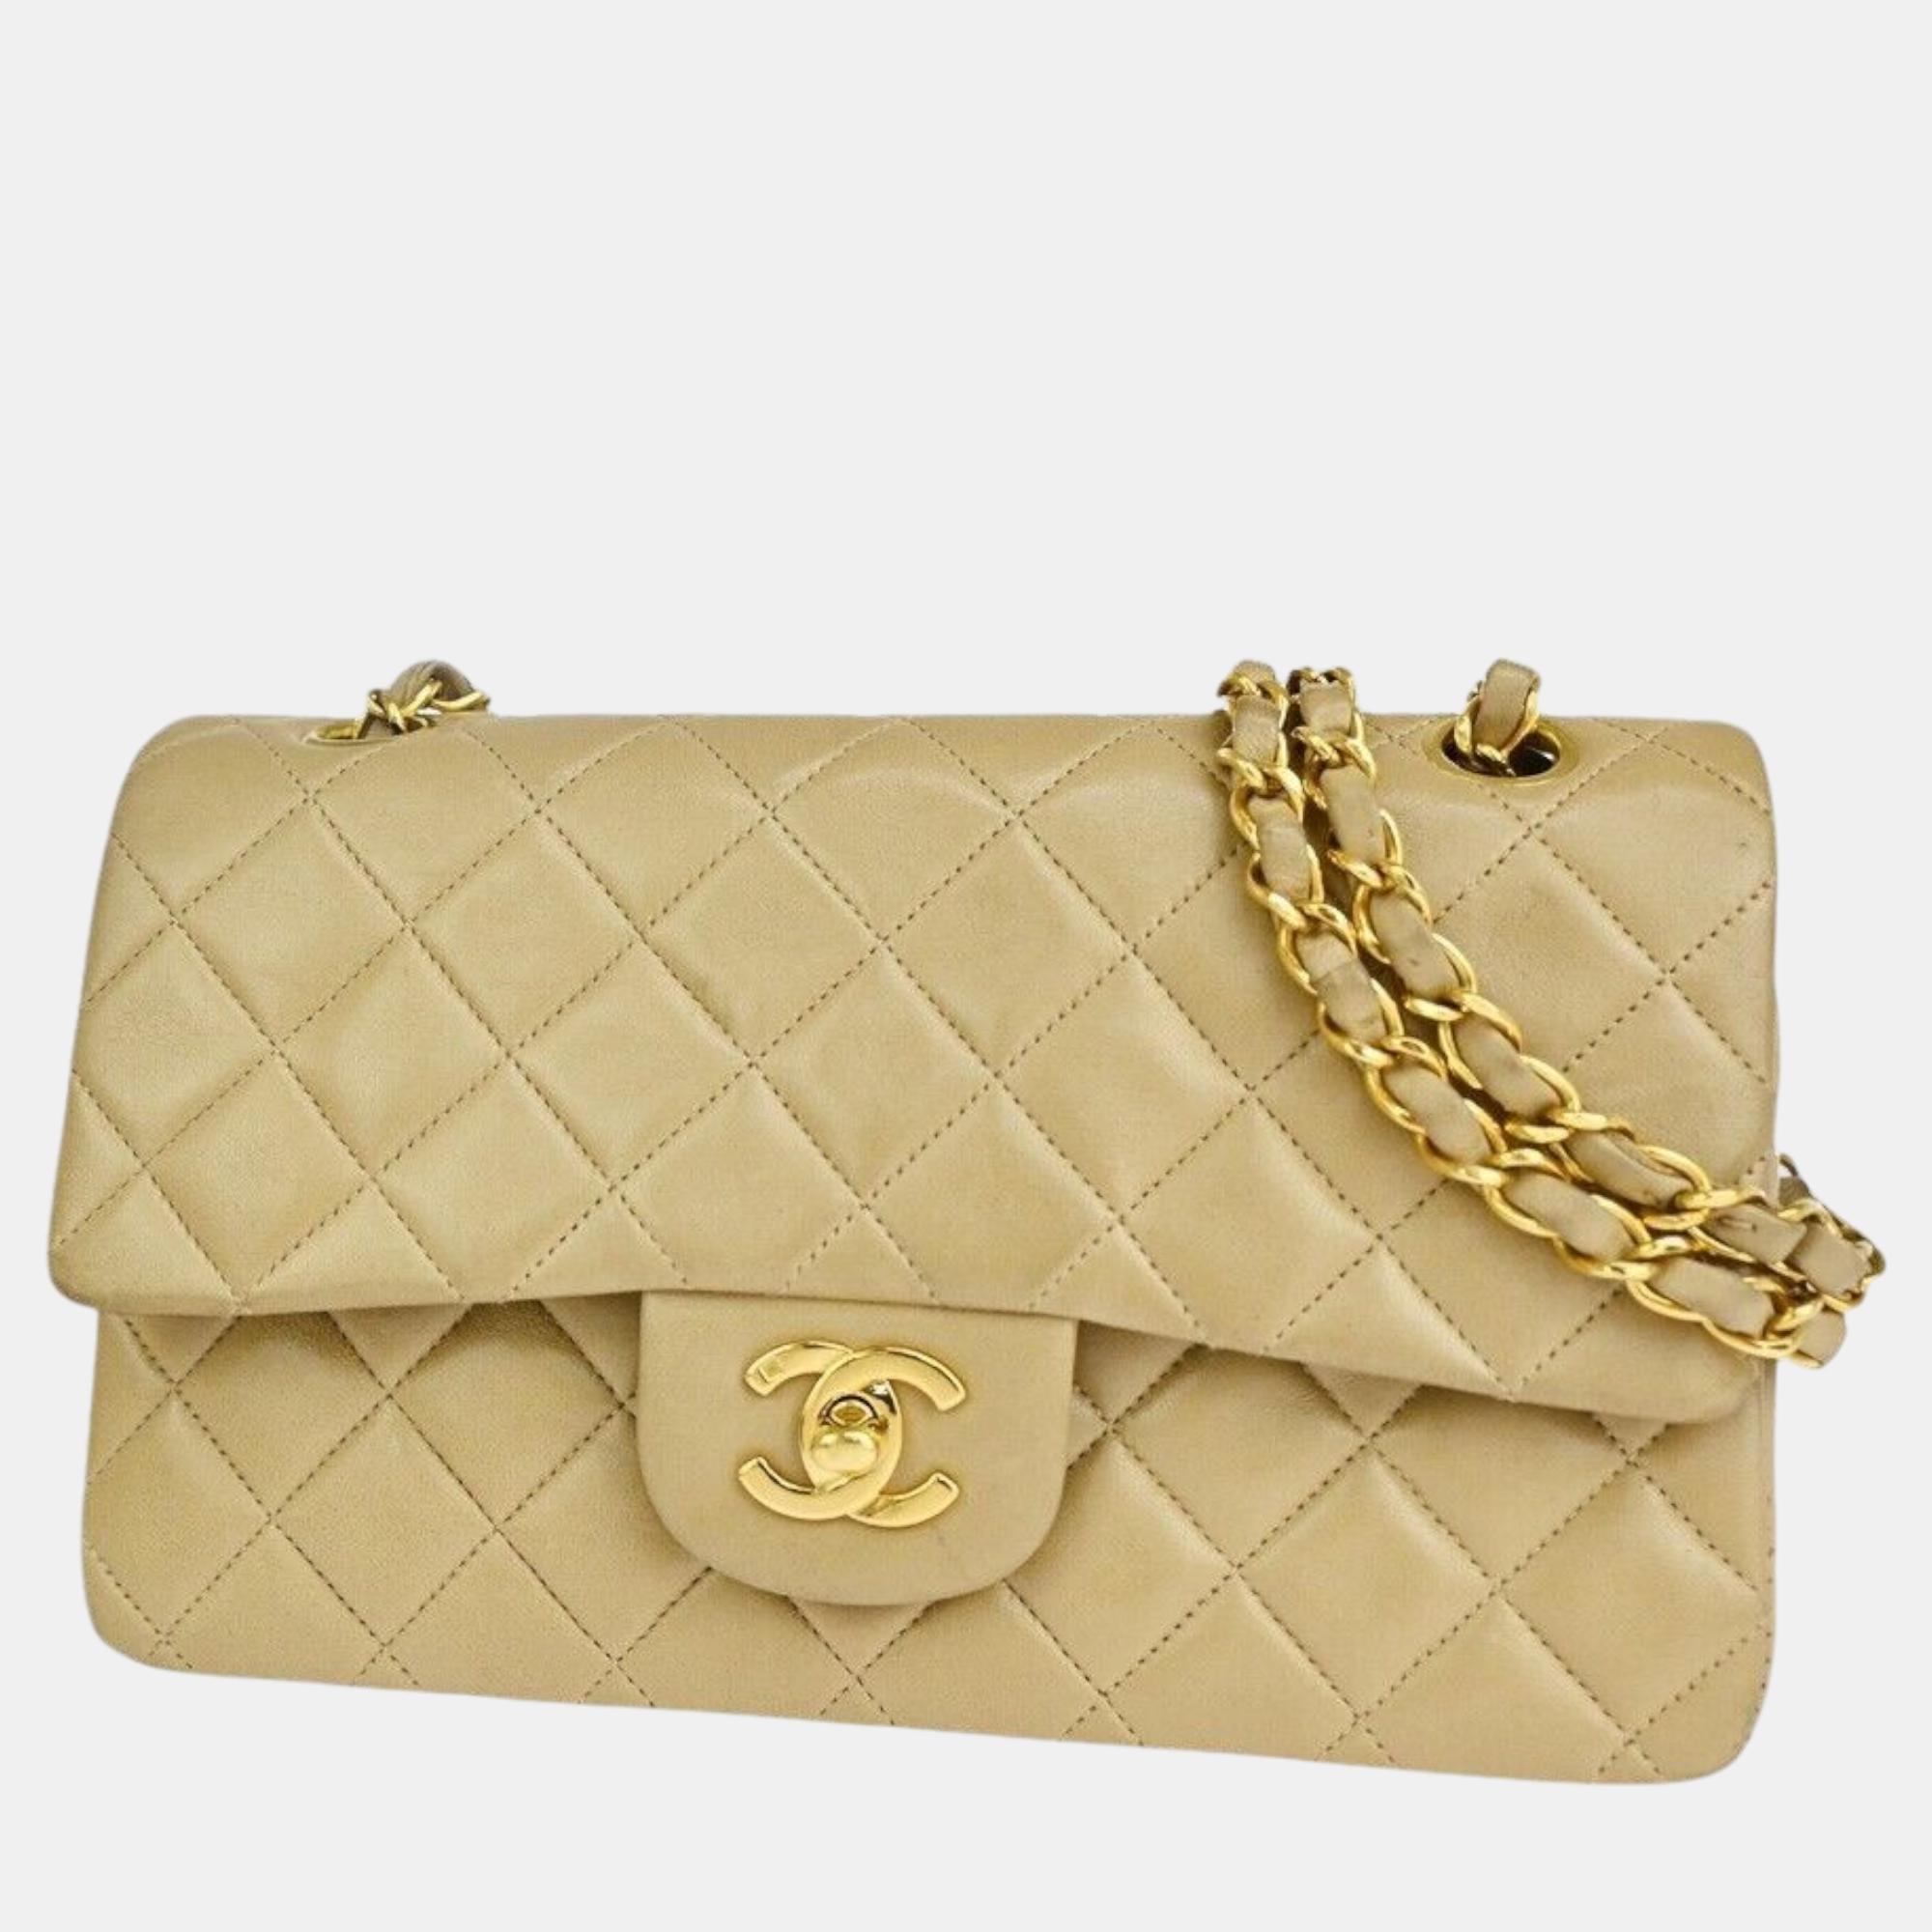 Chanel beige leather timeless shoulder bag